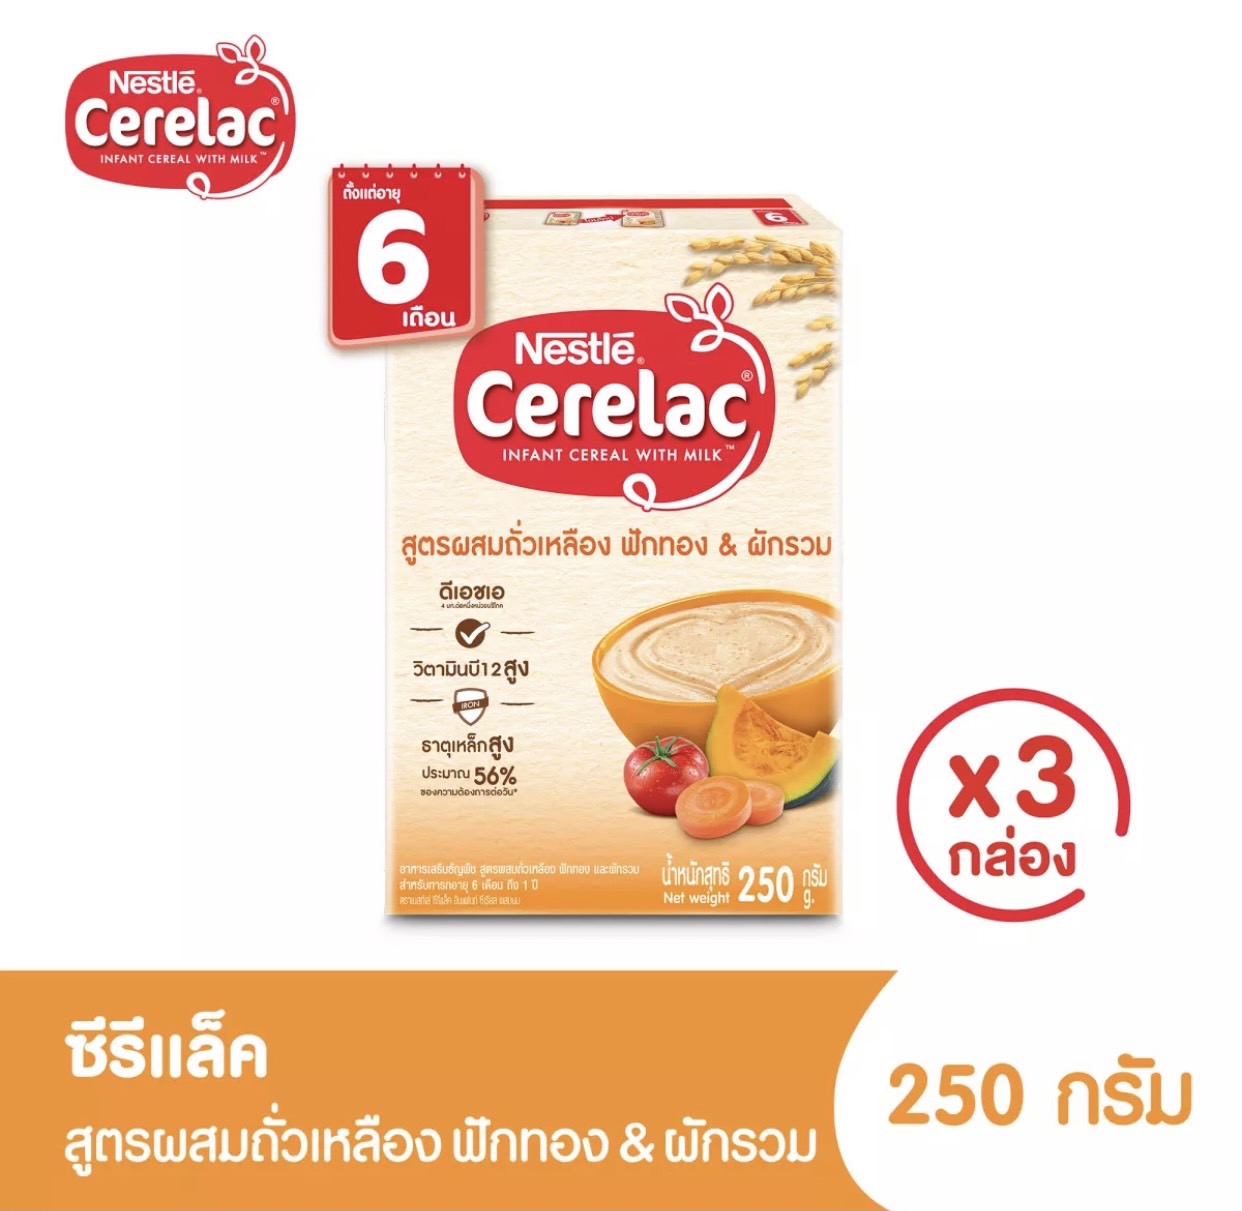 คำอธิบายเพิ่มเติมเกี่ยวกับ CERELAC ซีรีแล็ค อาหารเสริมสำหรับเด็ก ตั้งแต่อายุ 6 เดือนขึ้นไป ขนาด 200/250 มล แพ็ค 3 กล่อง